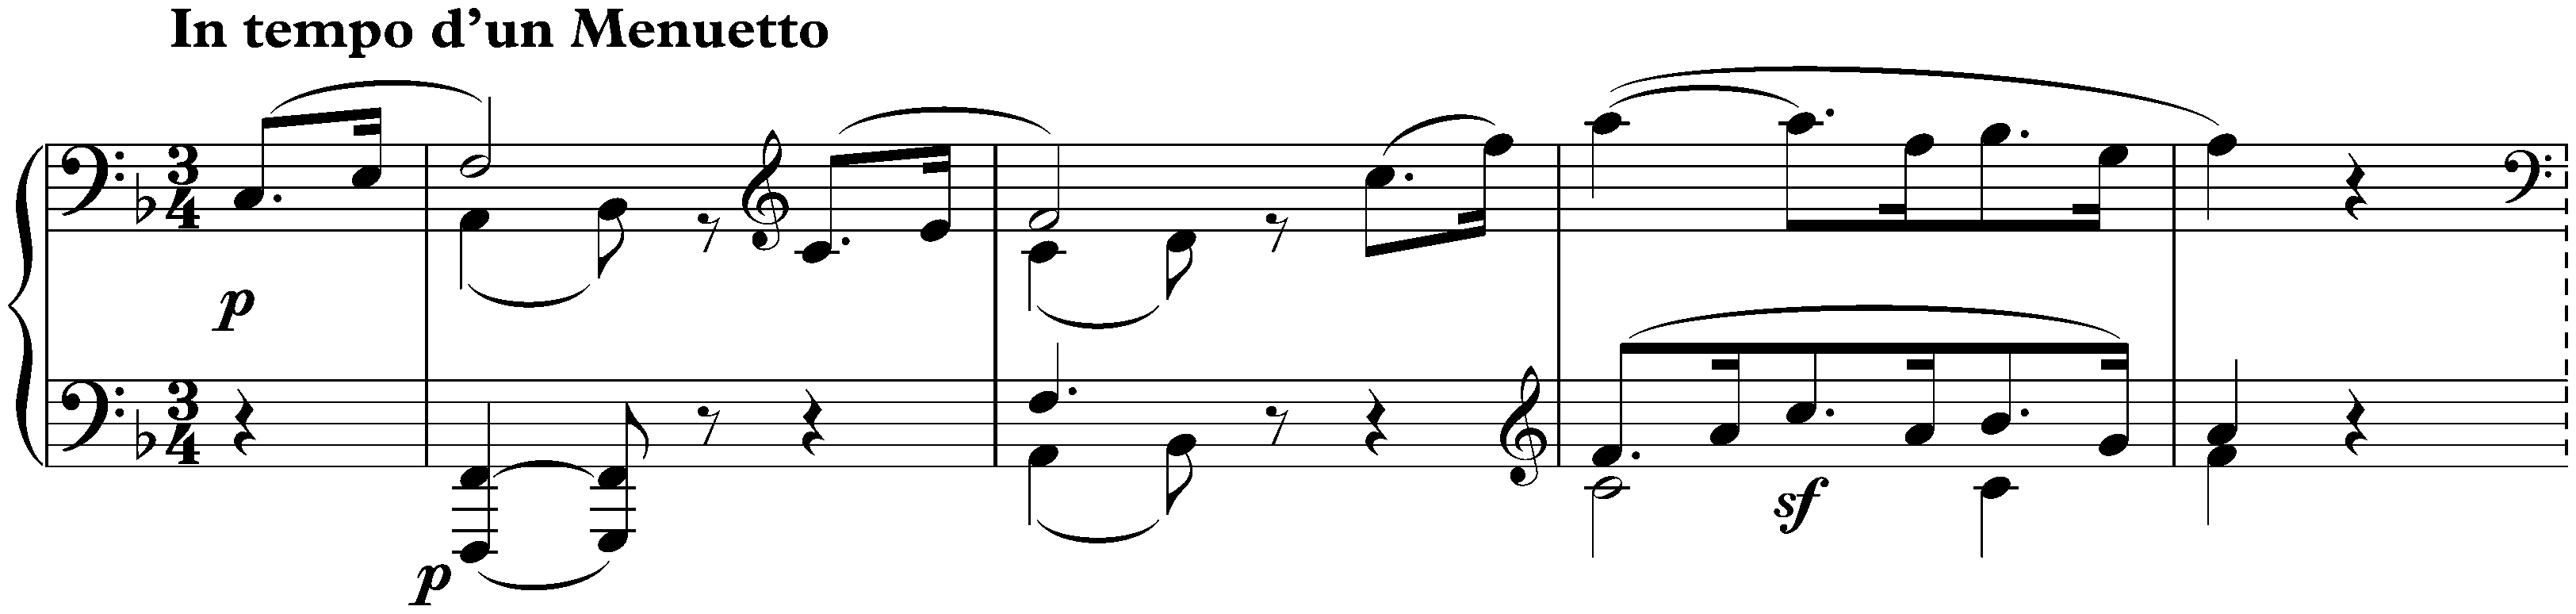 Sonata no. 22 in F major, op. 54; 1. In tempo d’un Menuetto</